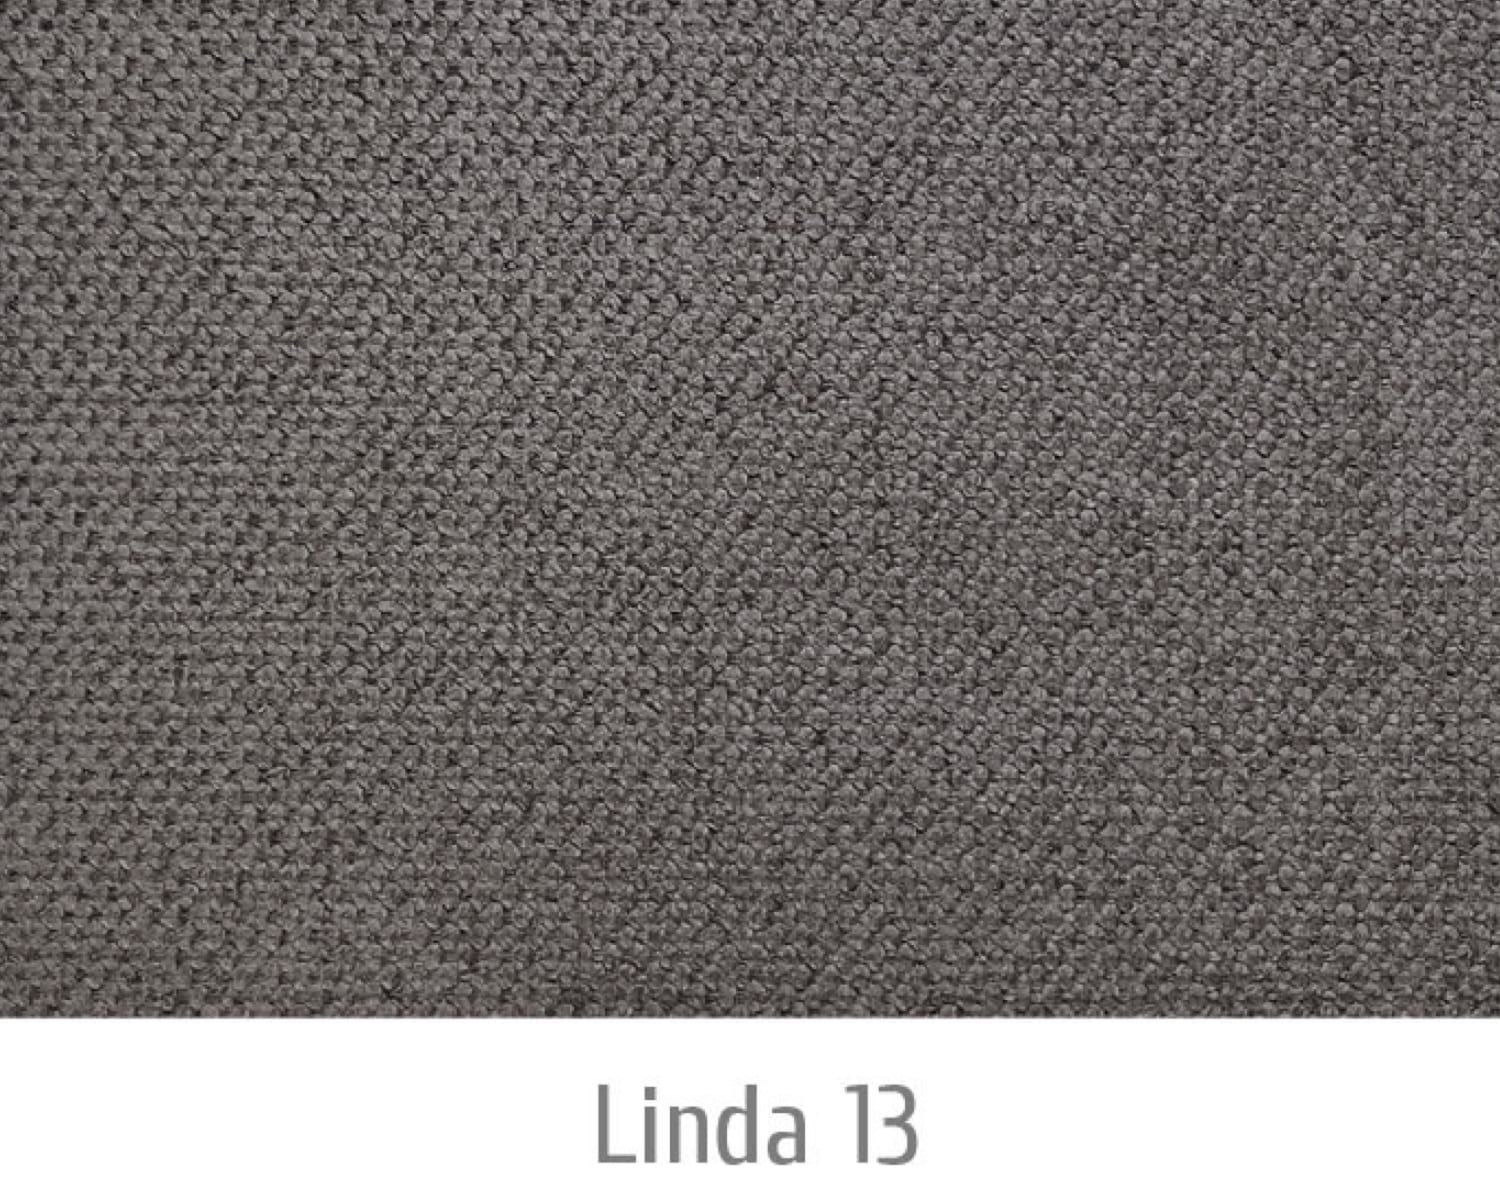 Linda13